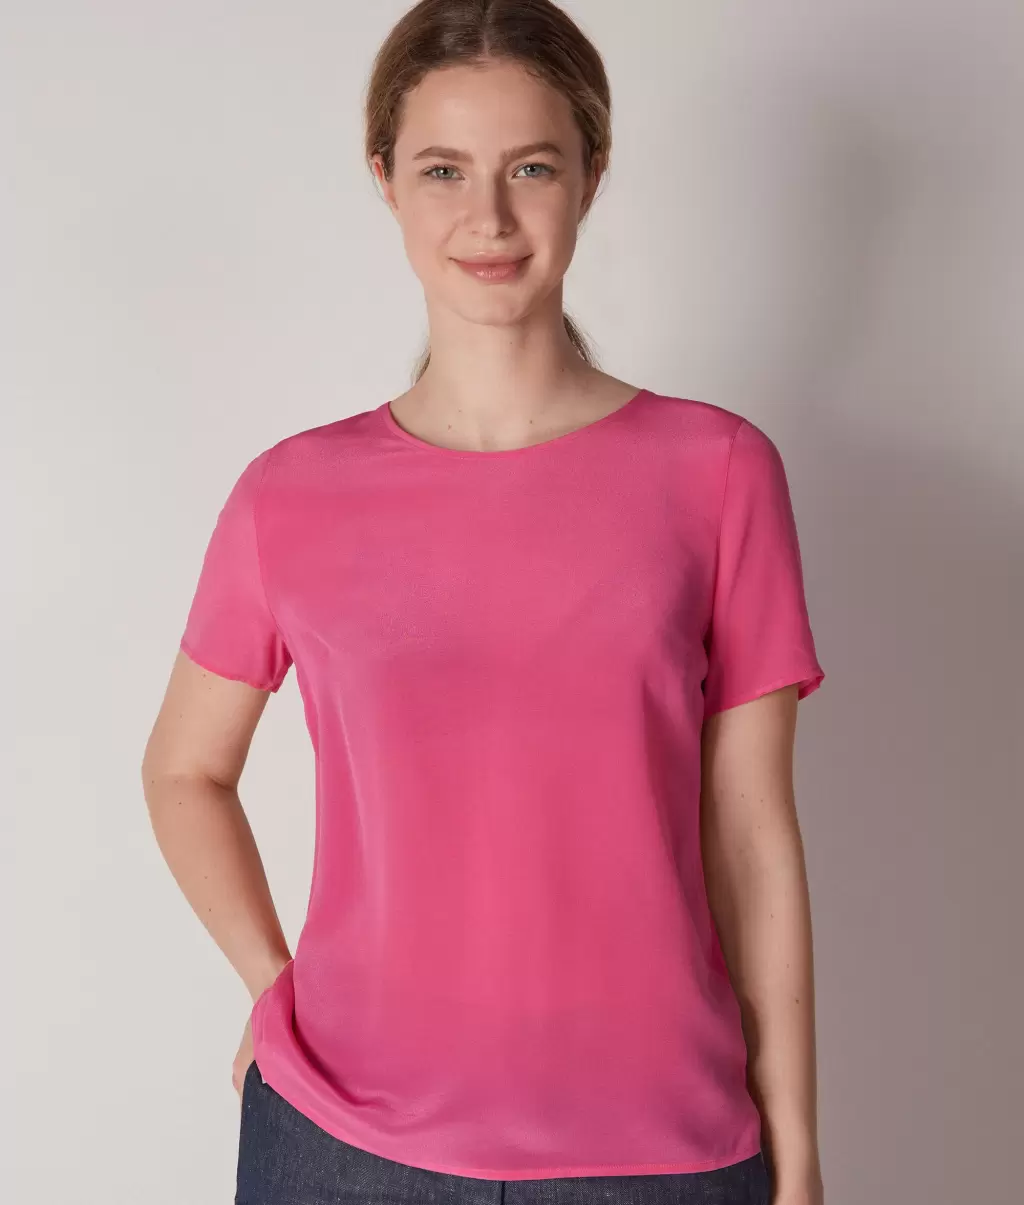 Topy I T-Shirty Kobieta Jedwabna Koszulka Z Okrągłym Dekoltem Falconeri Pink - 1